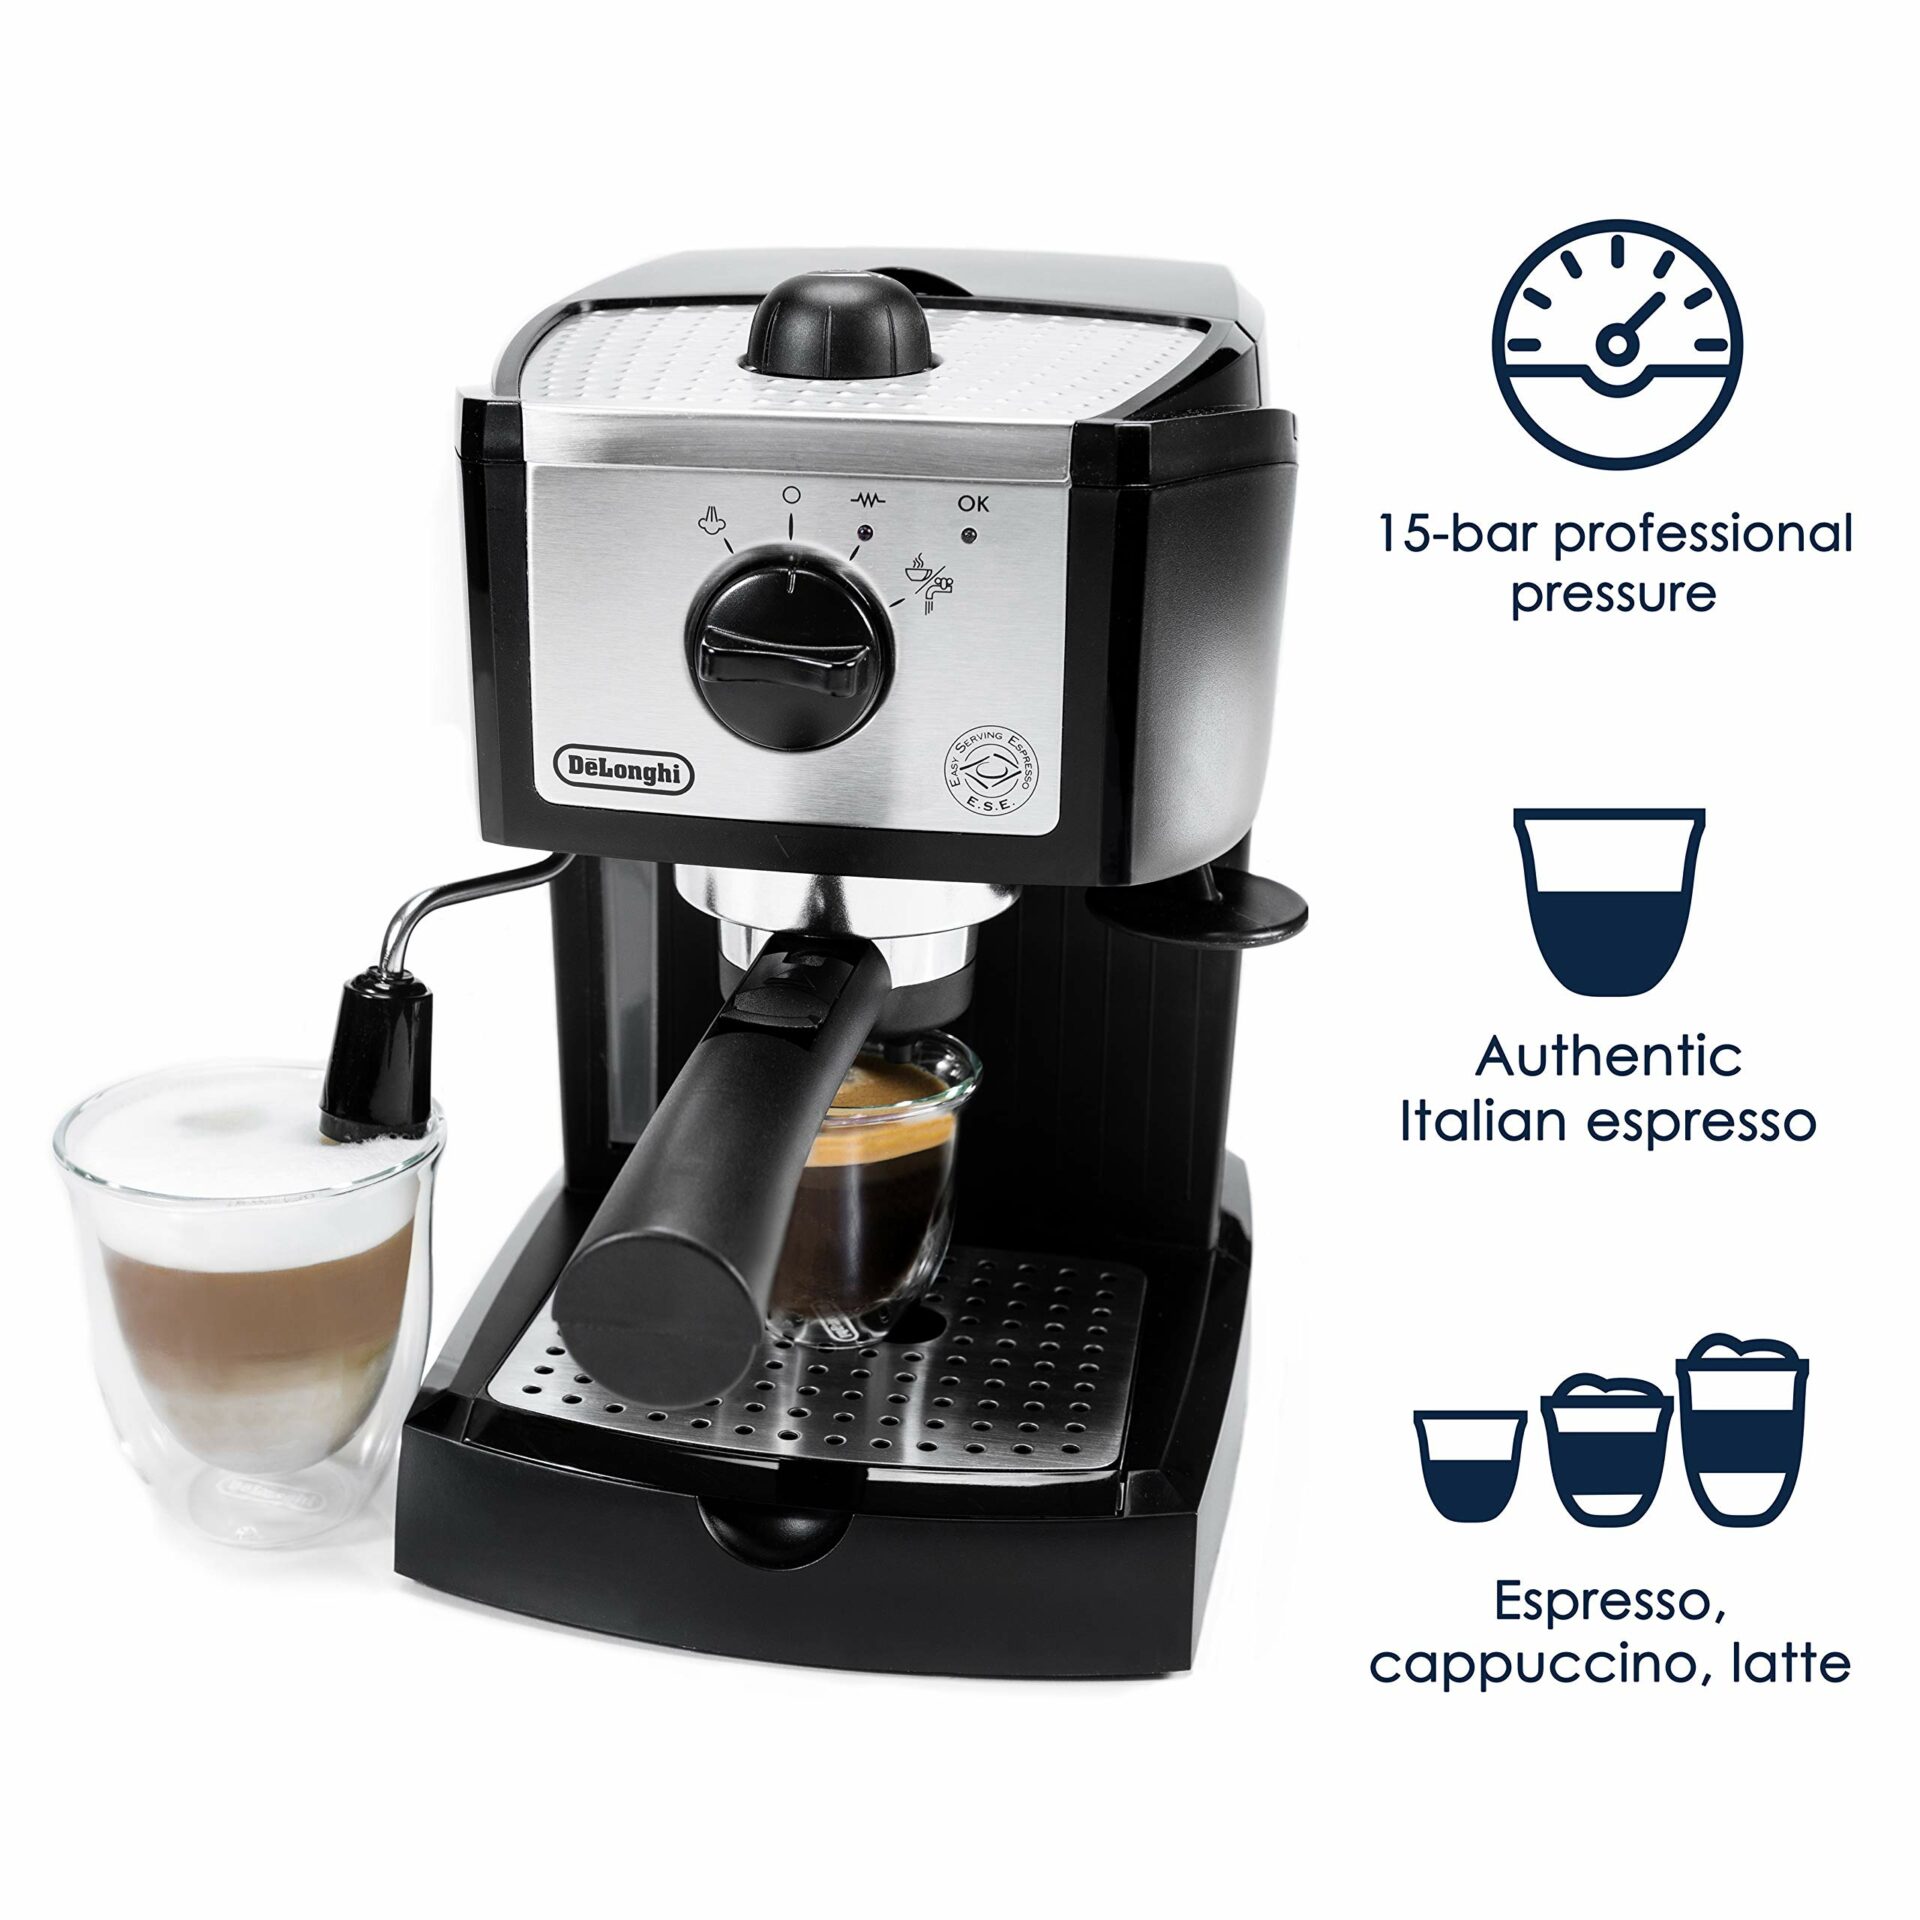 De'Longhi EC155 15 Bar Pump Espresso and Cappuccino Maker, delonghi espresso manual, delonghi expresso machine, espresso machine delonghi, best espresso maker 2020, best espresso machine under 200